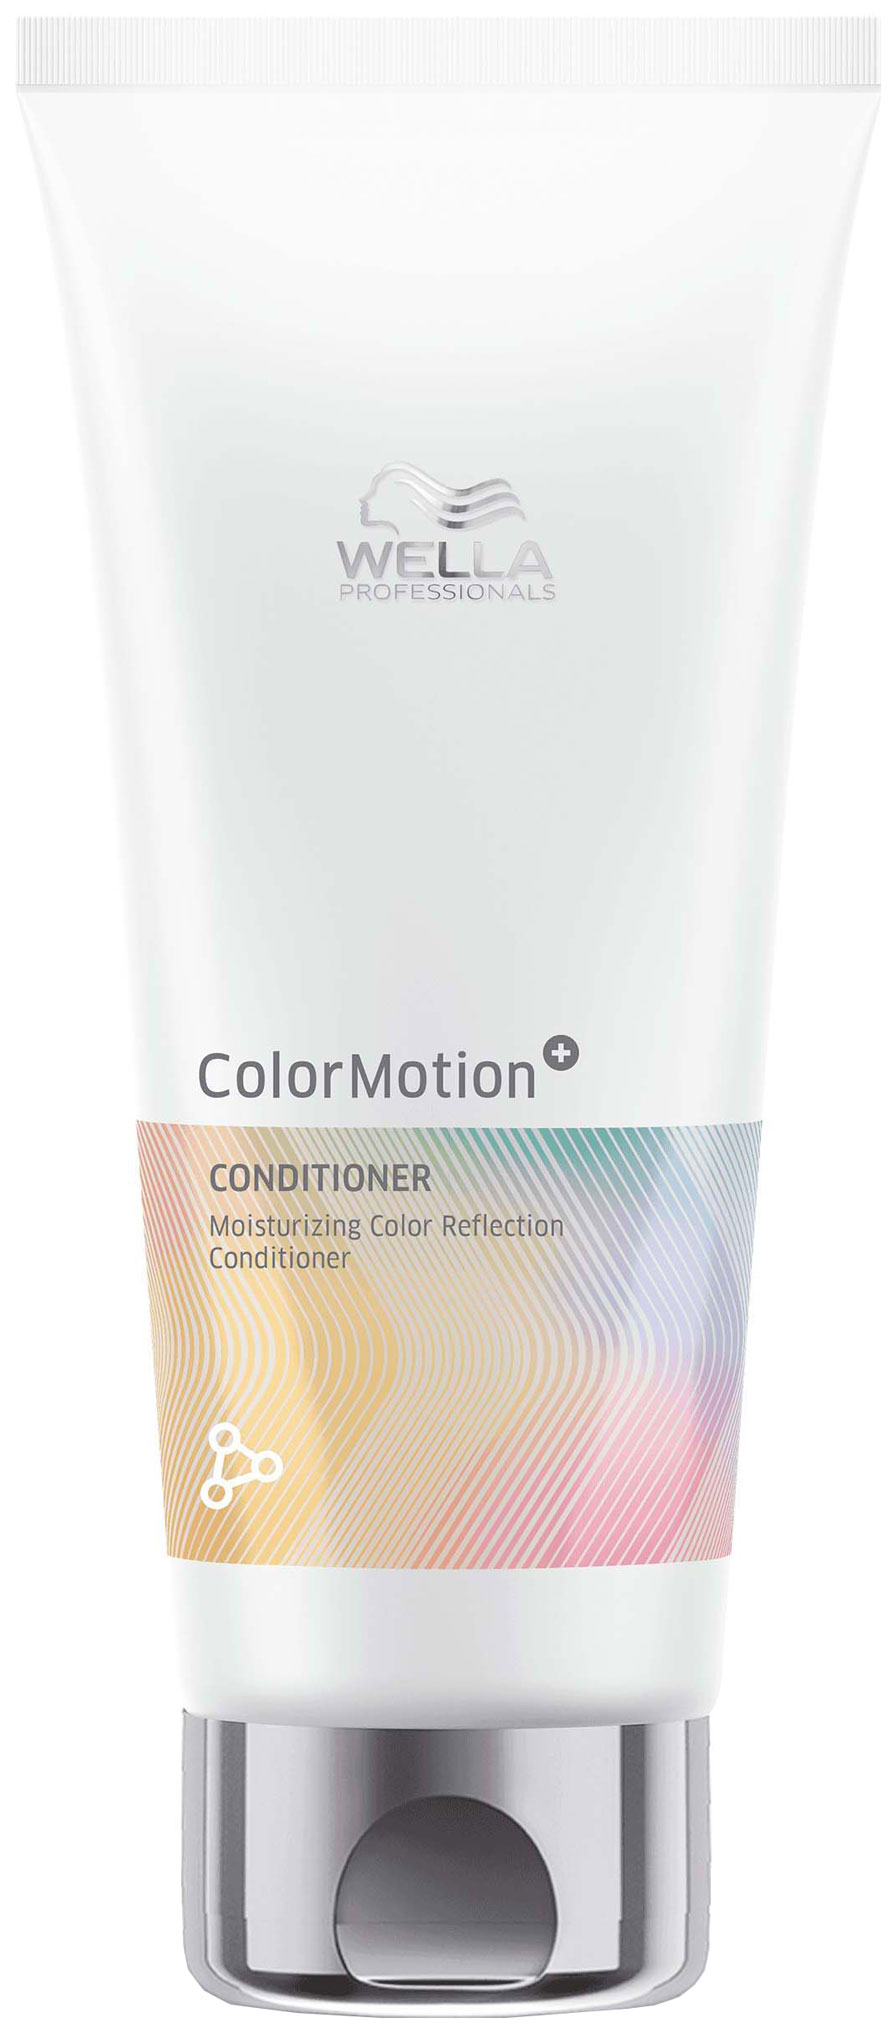 Бальзам Wella Professionals Motion Moisturizing Color Reflection для окрашенных волос увлажняющий бальзам для сияния цвета окрашенных волос color motion 7657 5874 5676 200 мл